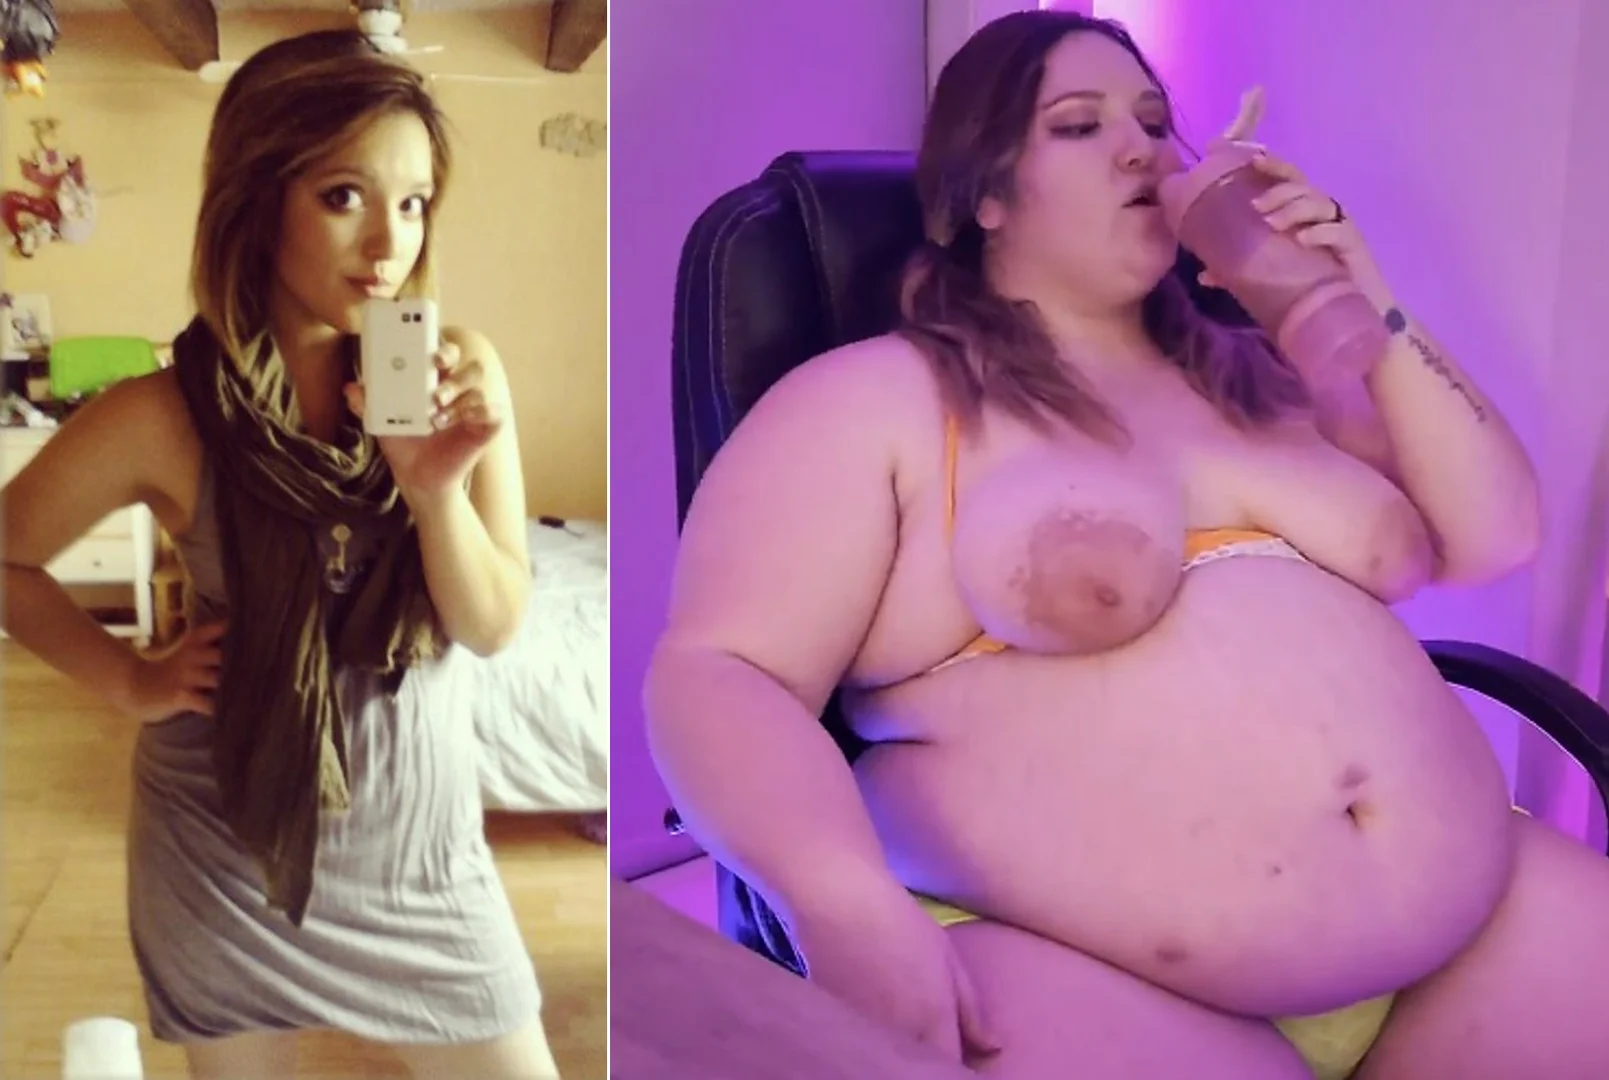 Chubby Girl Journey - Cute Feedee's Weight Gain journey - ThisVid.com